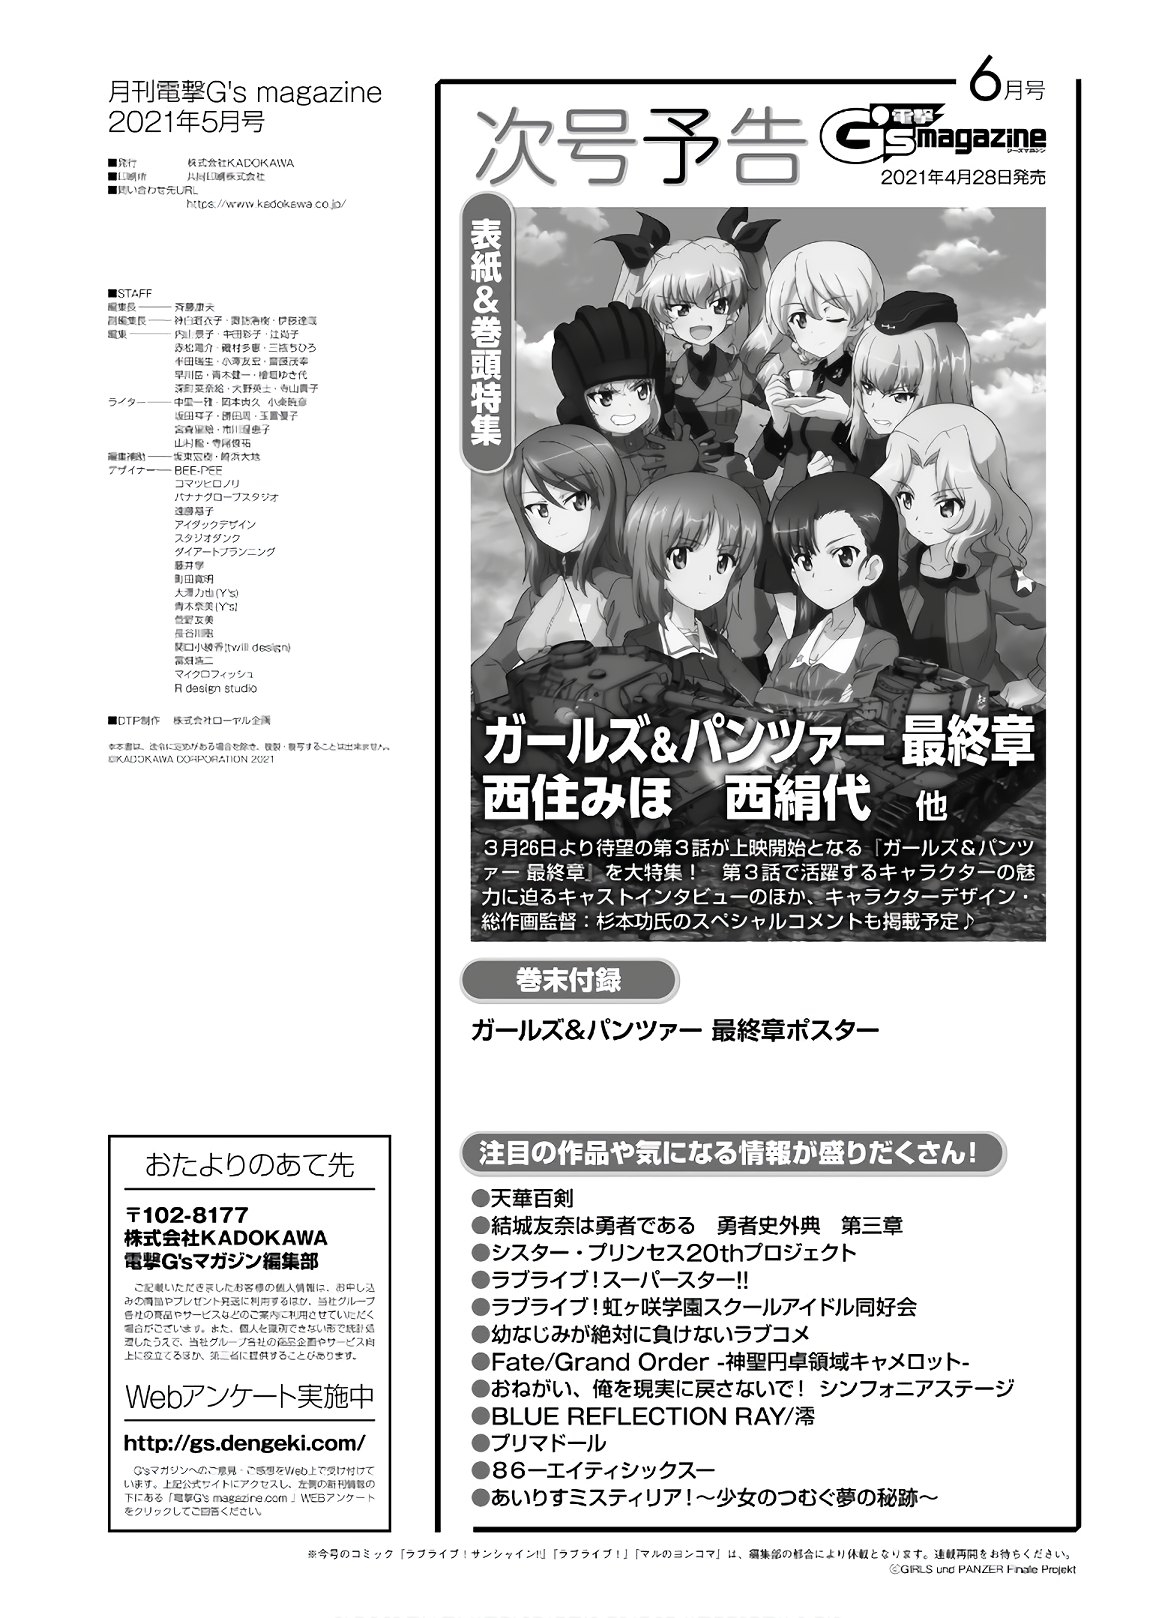 Dengeki G's Magazine #286 - May 2021 143